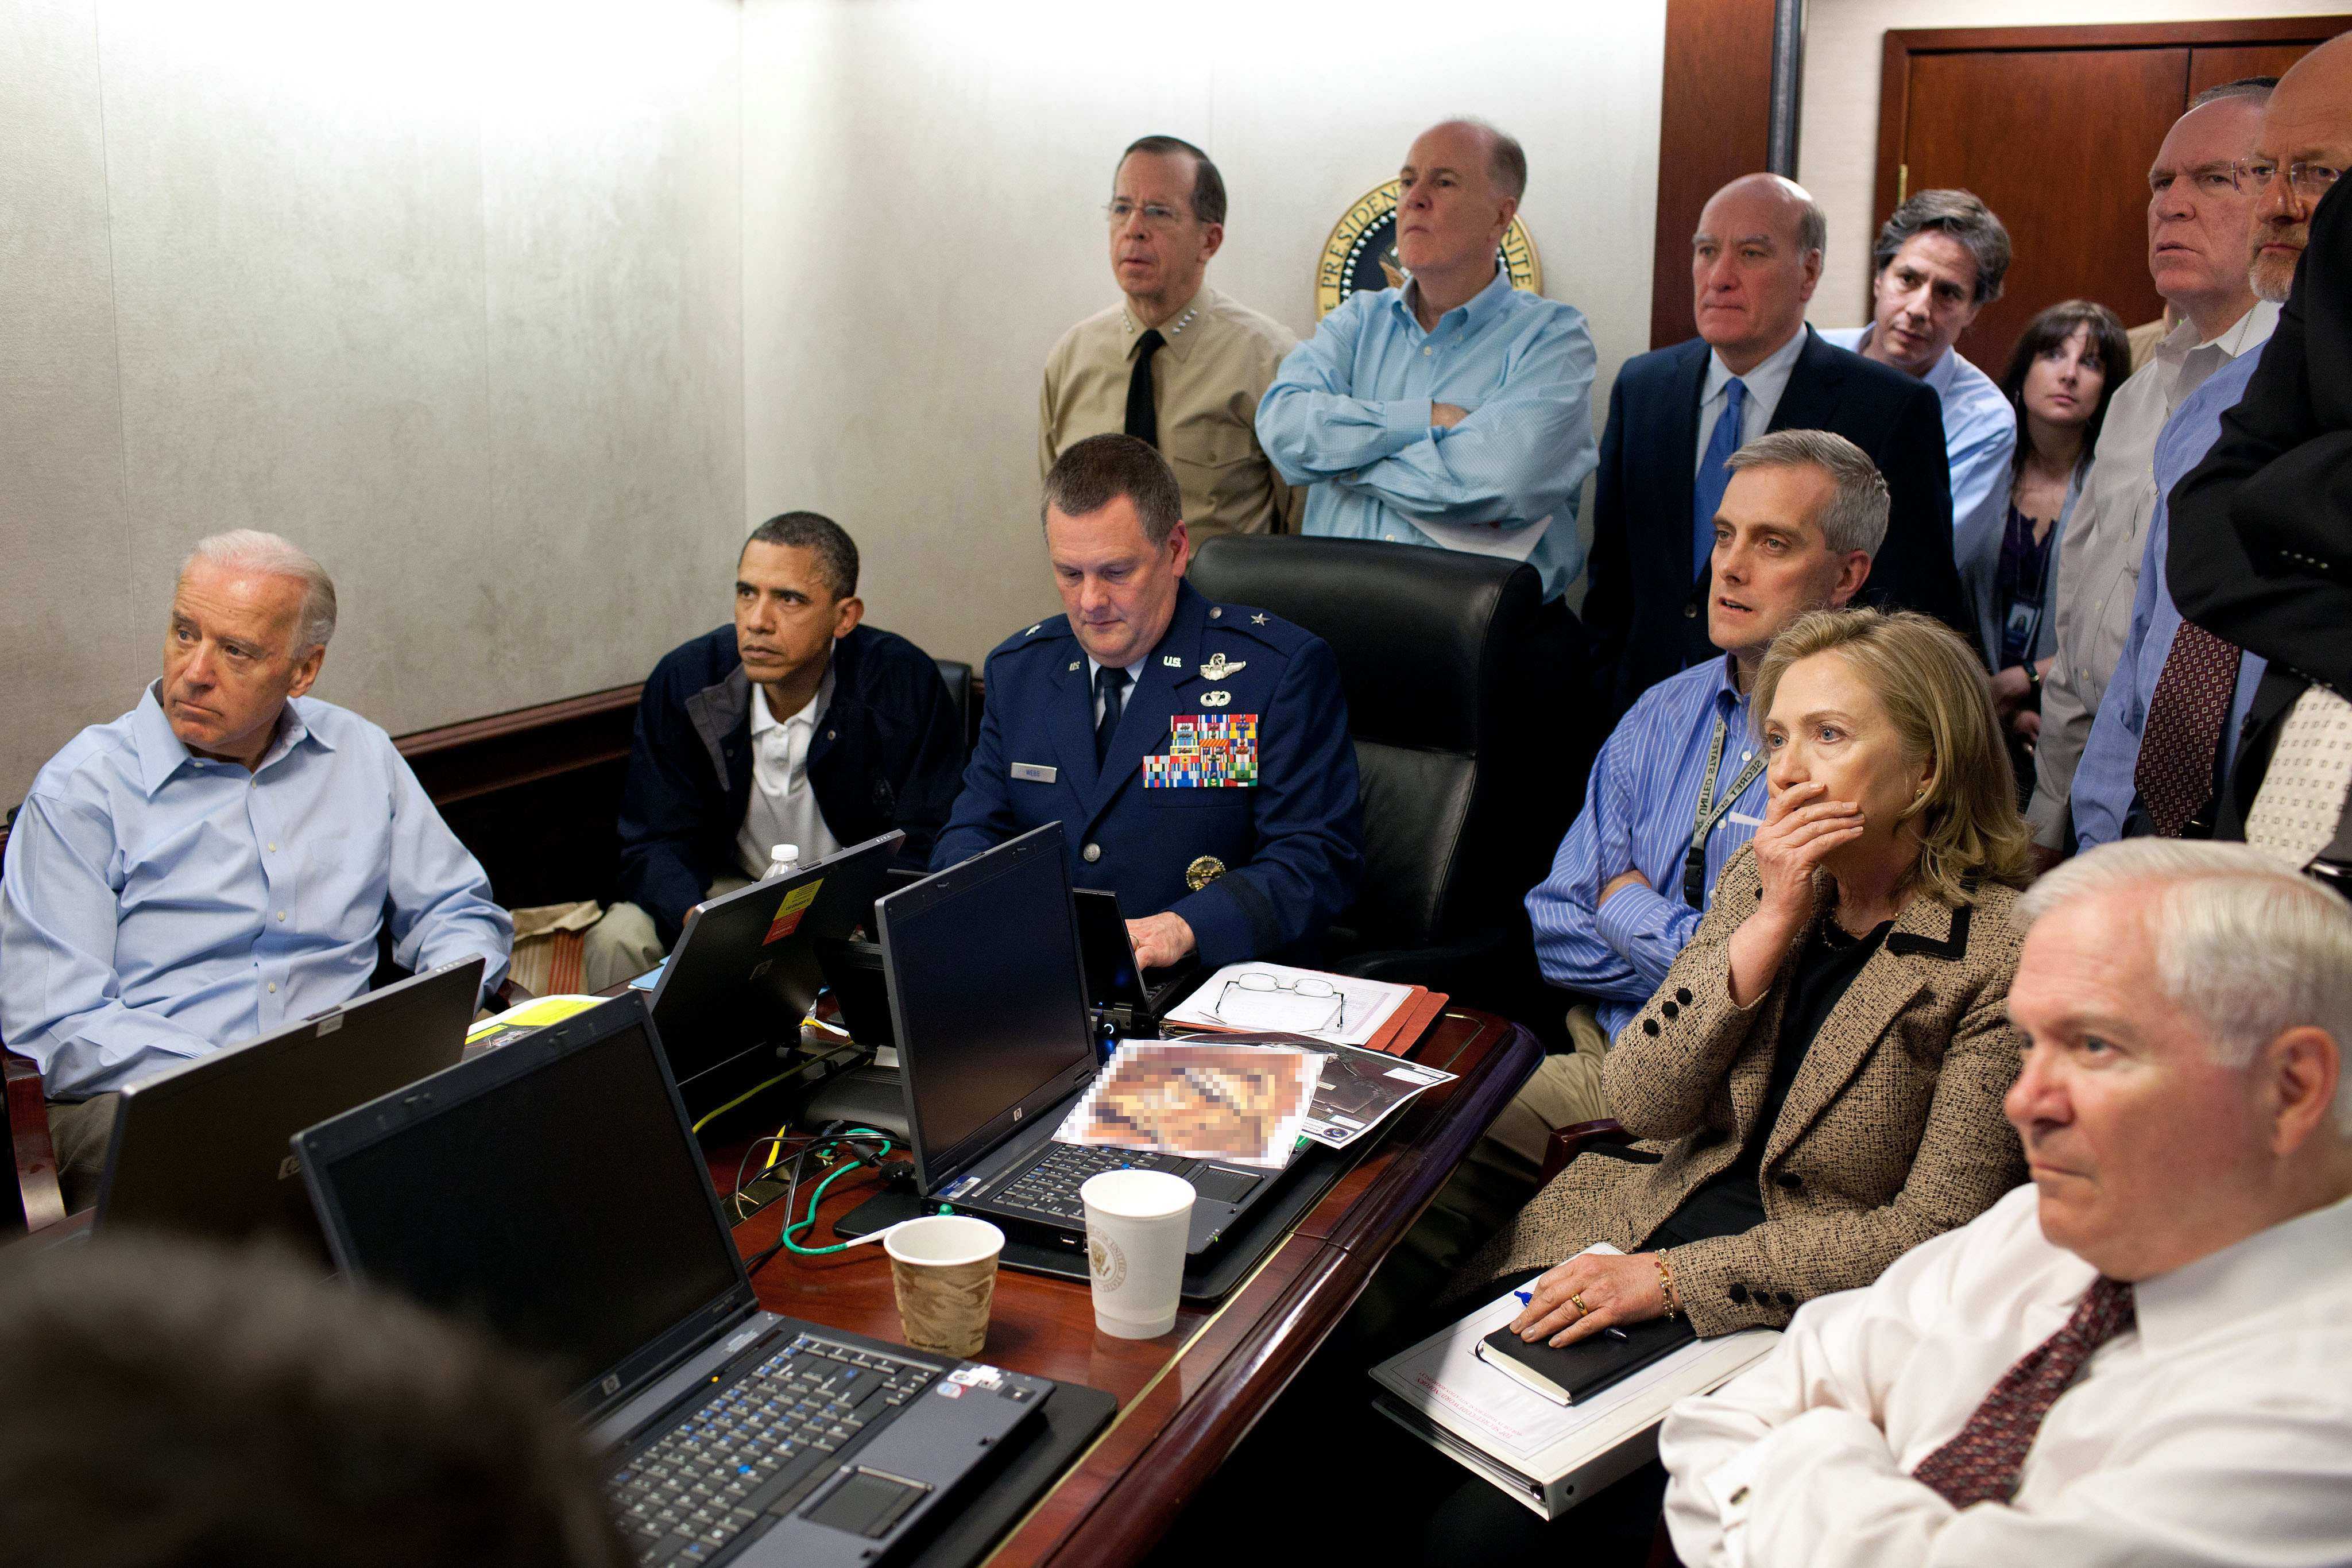 I Vitahuset satt bland andra president Obama och Hillary Clinton och tittade live på räden som ledde till att Bin Laden dödades. 